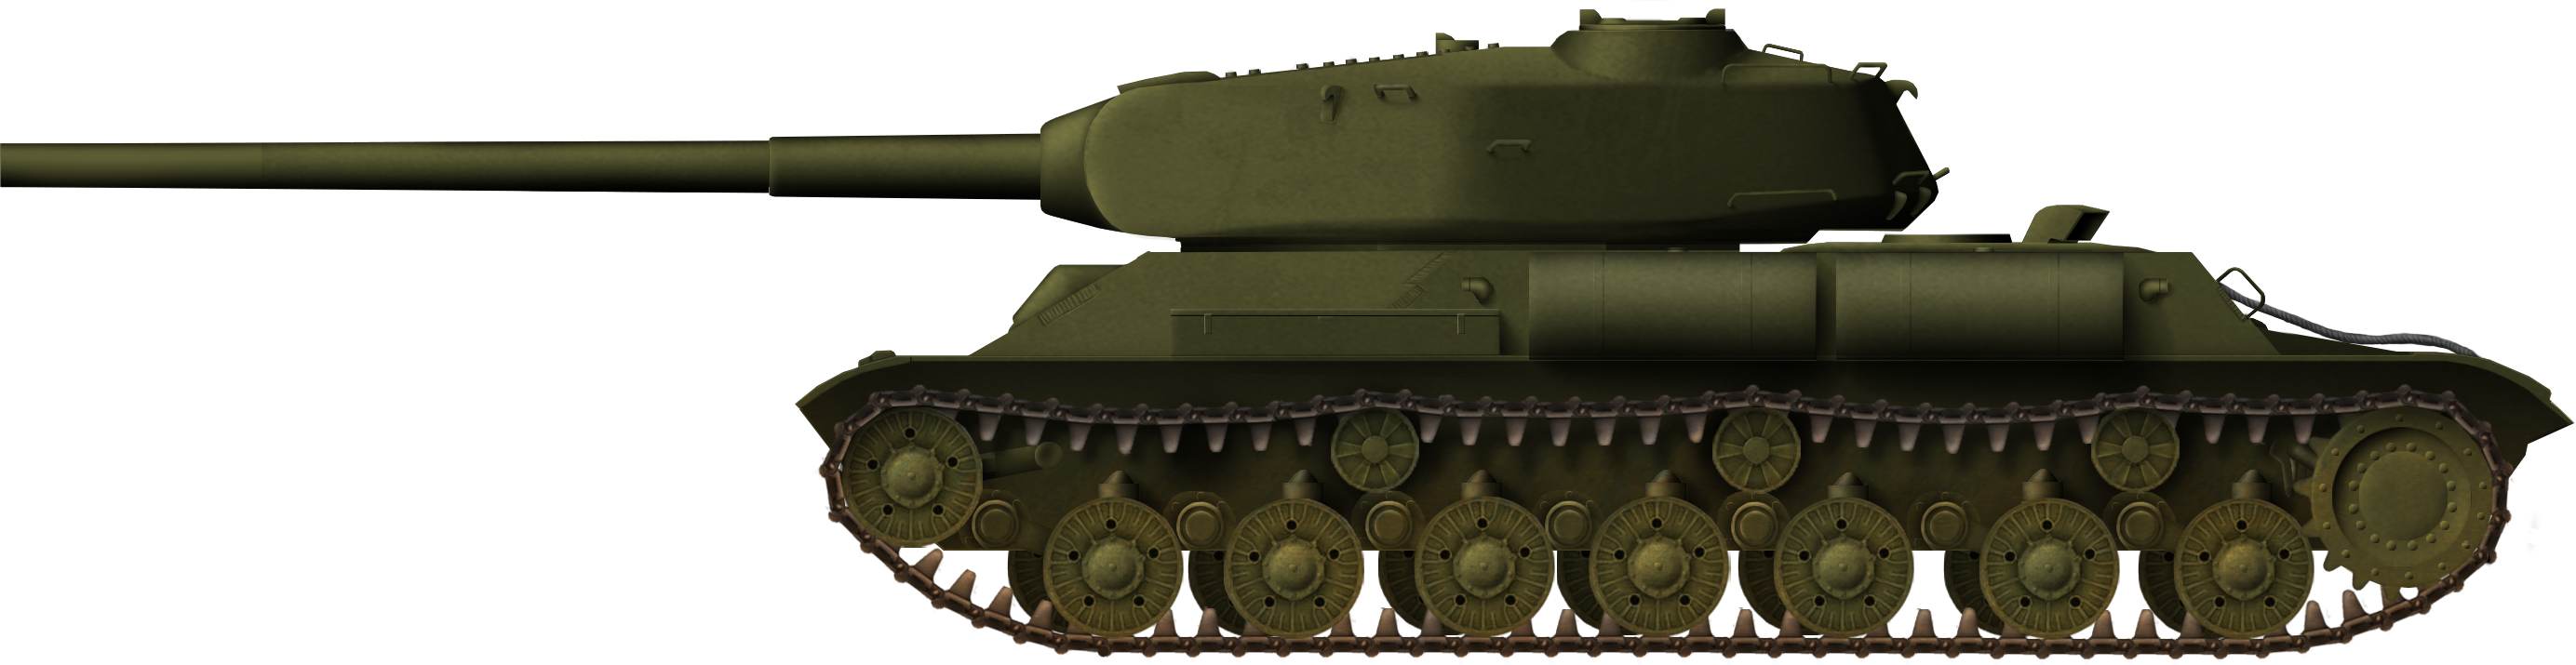 WW2 Soviet Heavy Tank Prototypes Archives - Tank Encyclopedia